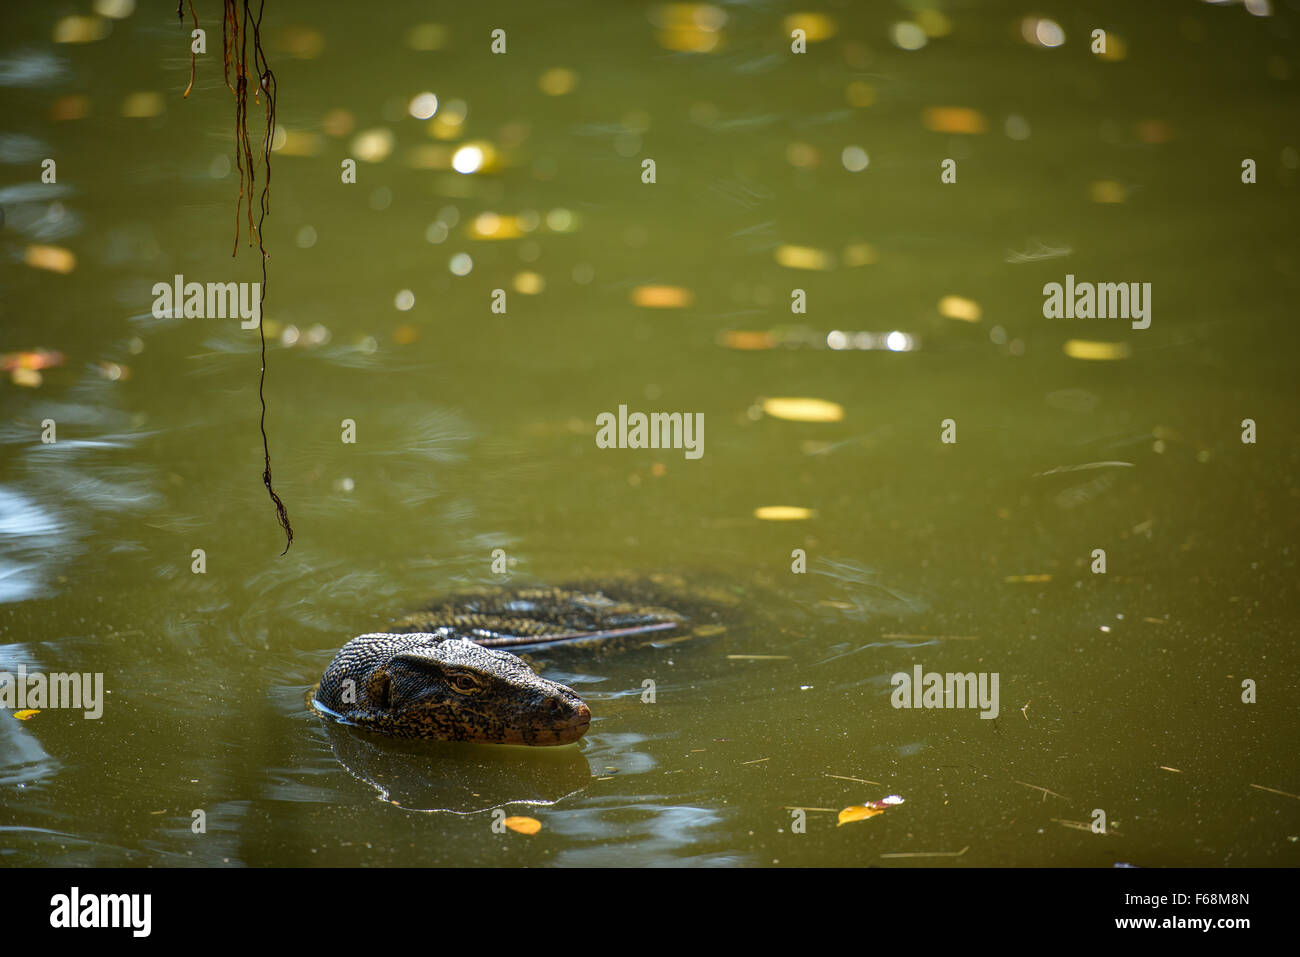 Asian monitor acqua nuota in acqua, con spazio di copia Foto Stock